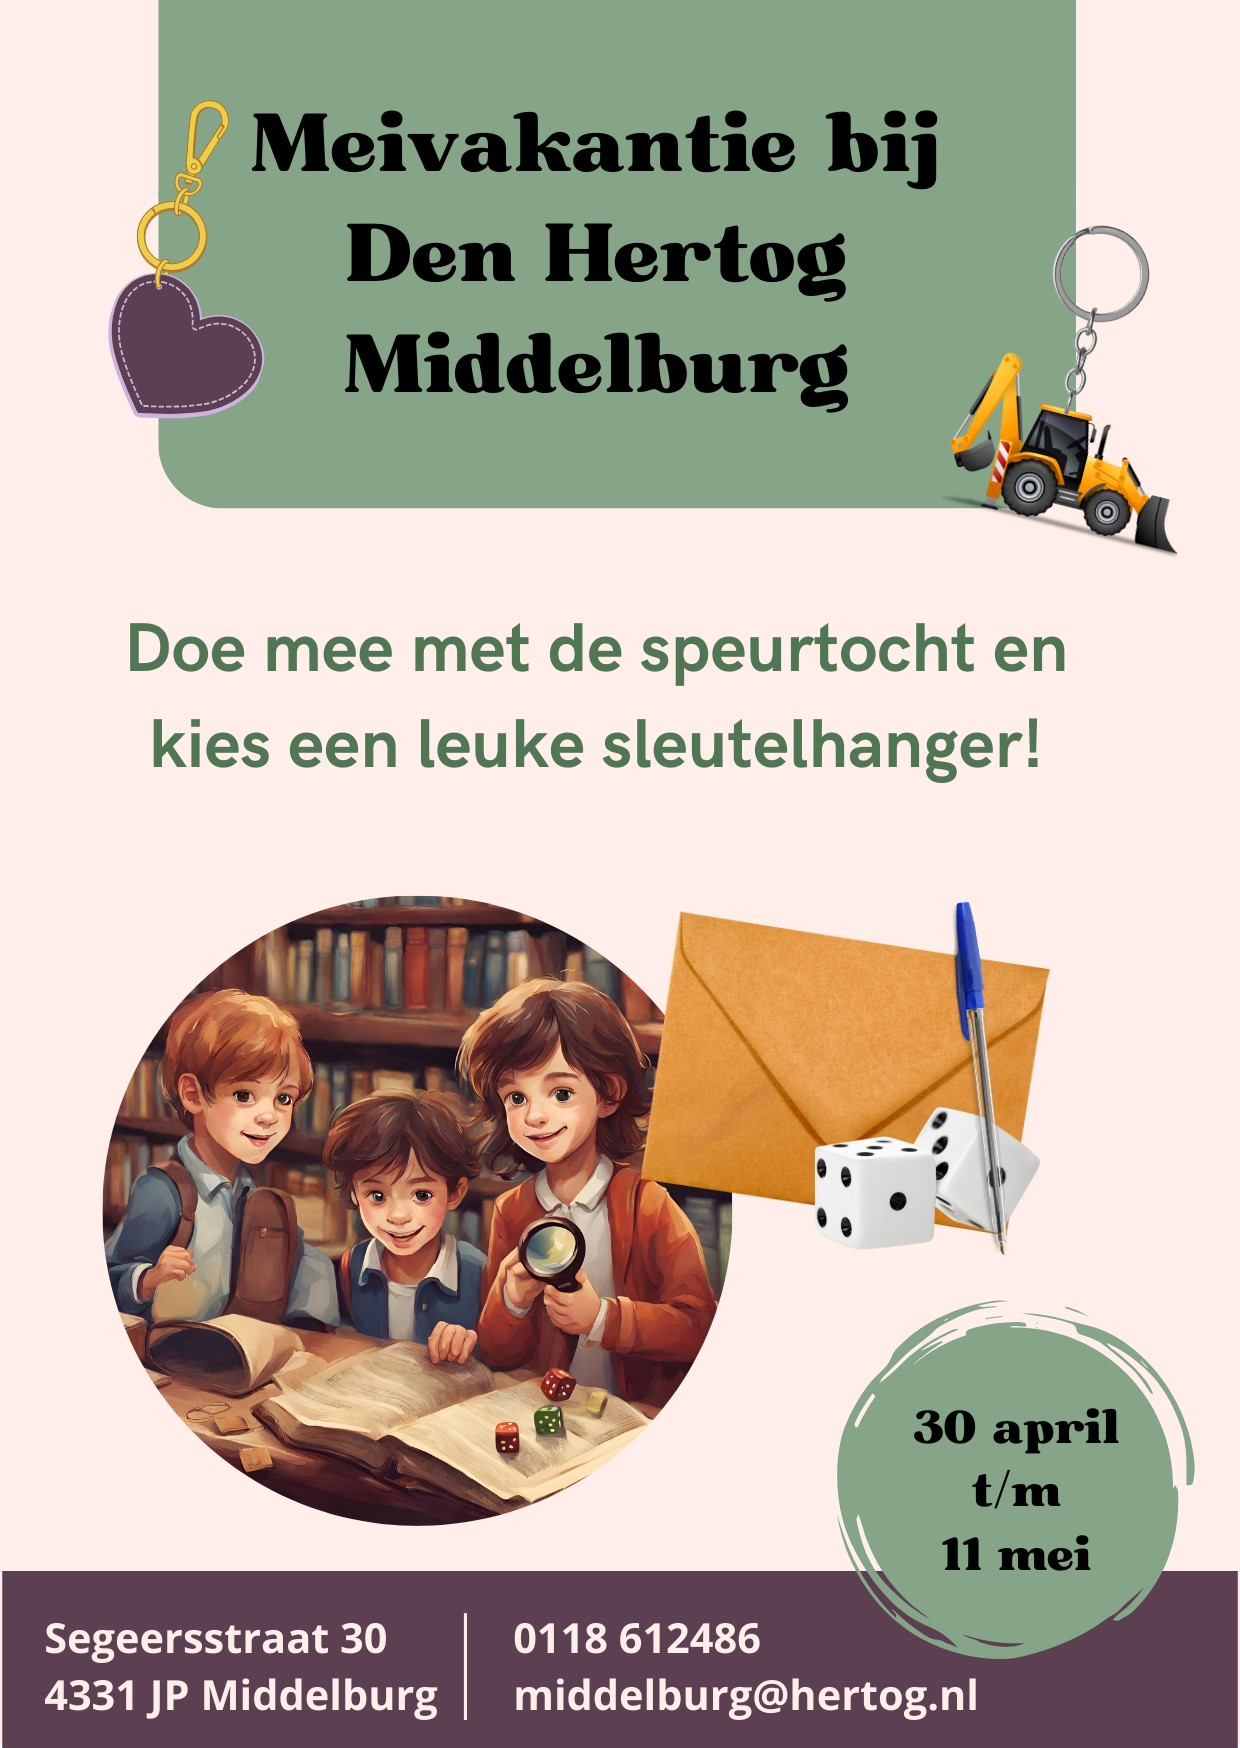 Meivakantie in Middelburg